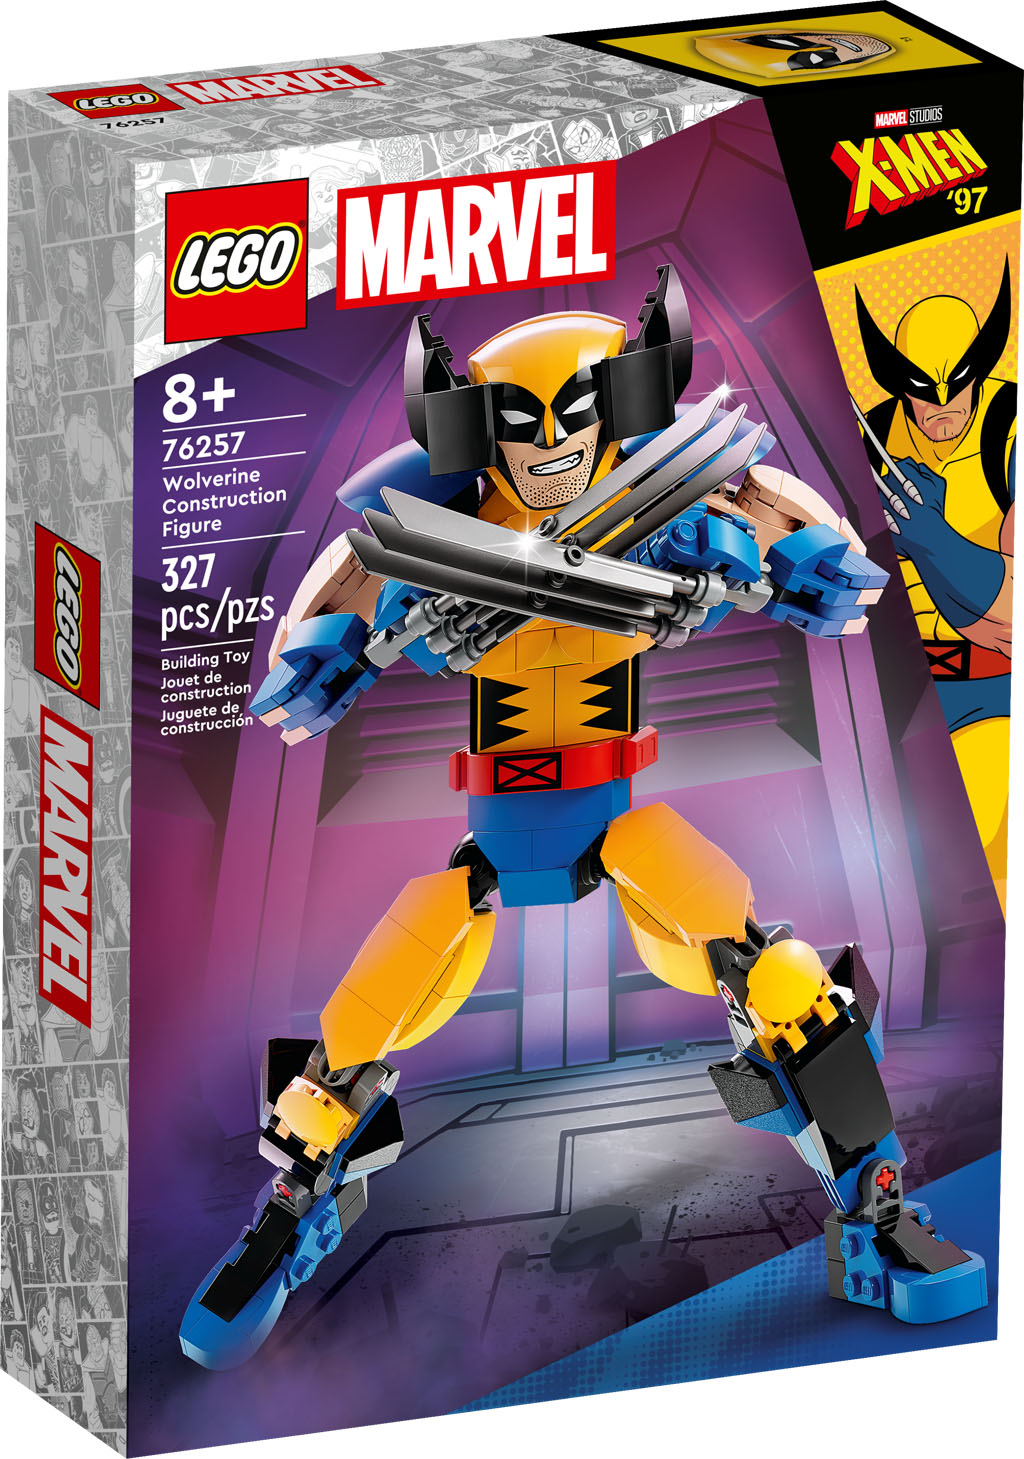 bureau Making flertal LEGO Marvel & DC Summer 2023 Sets Revealed - The Brick Fan